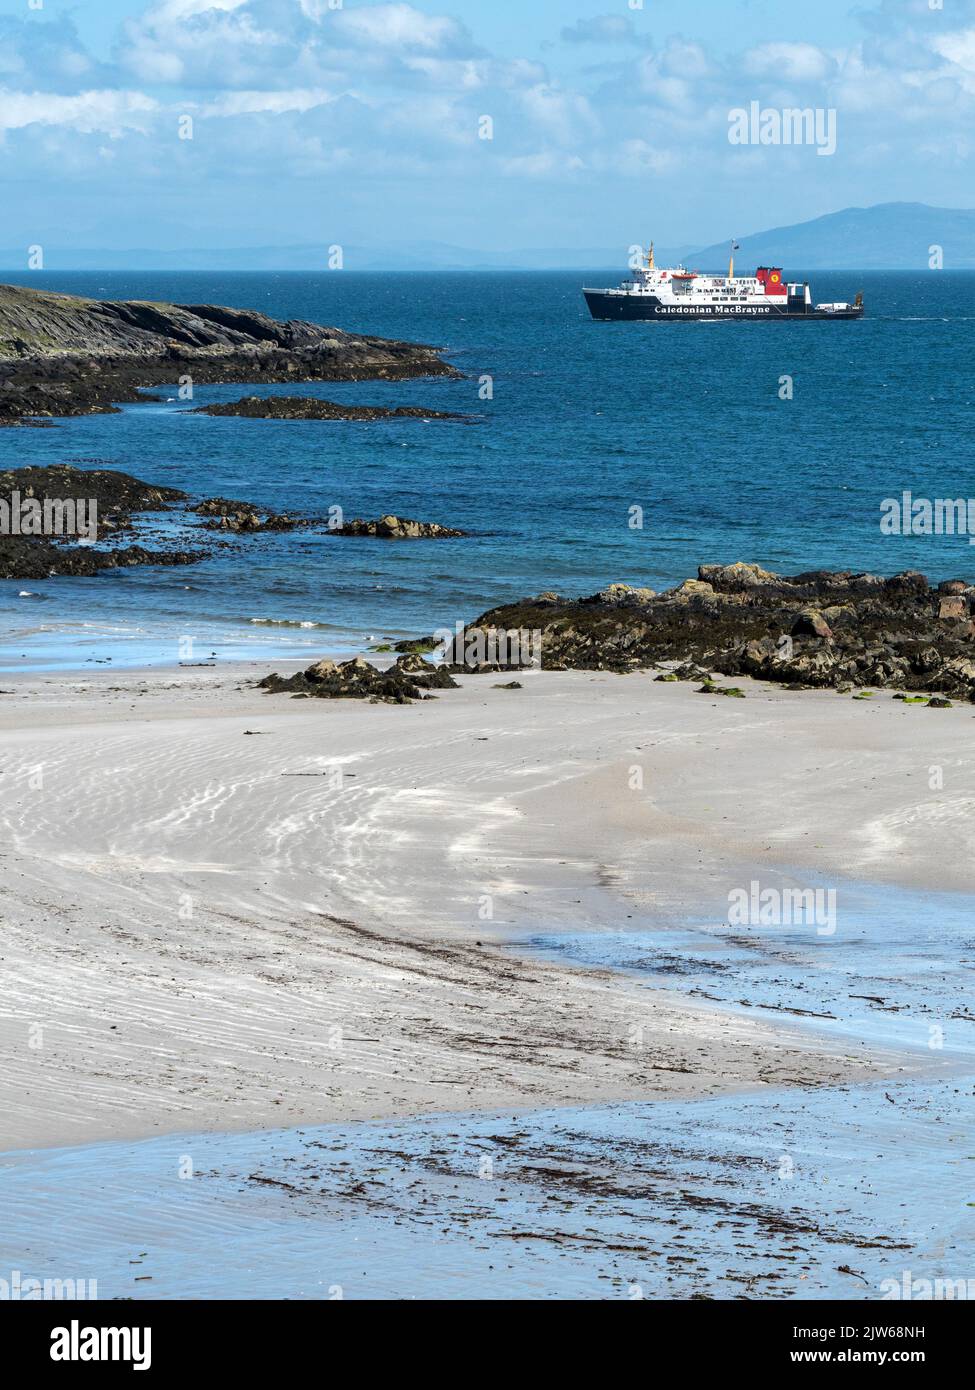 El ferry de MacBrayne Caledonian se acerca a la isla de Colonsay en ruta desde Islay, con la playa de arena de Queen's Bay en primer plano. Foto de stock